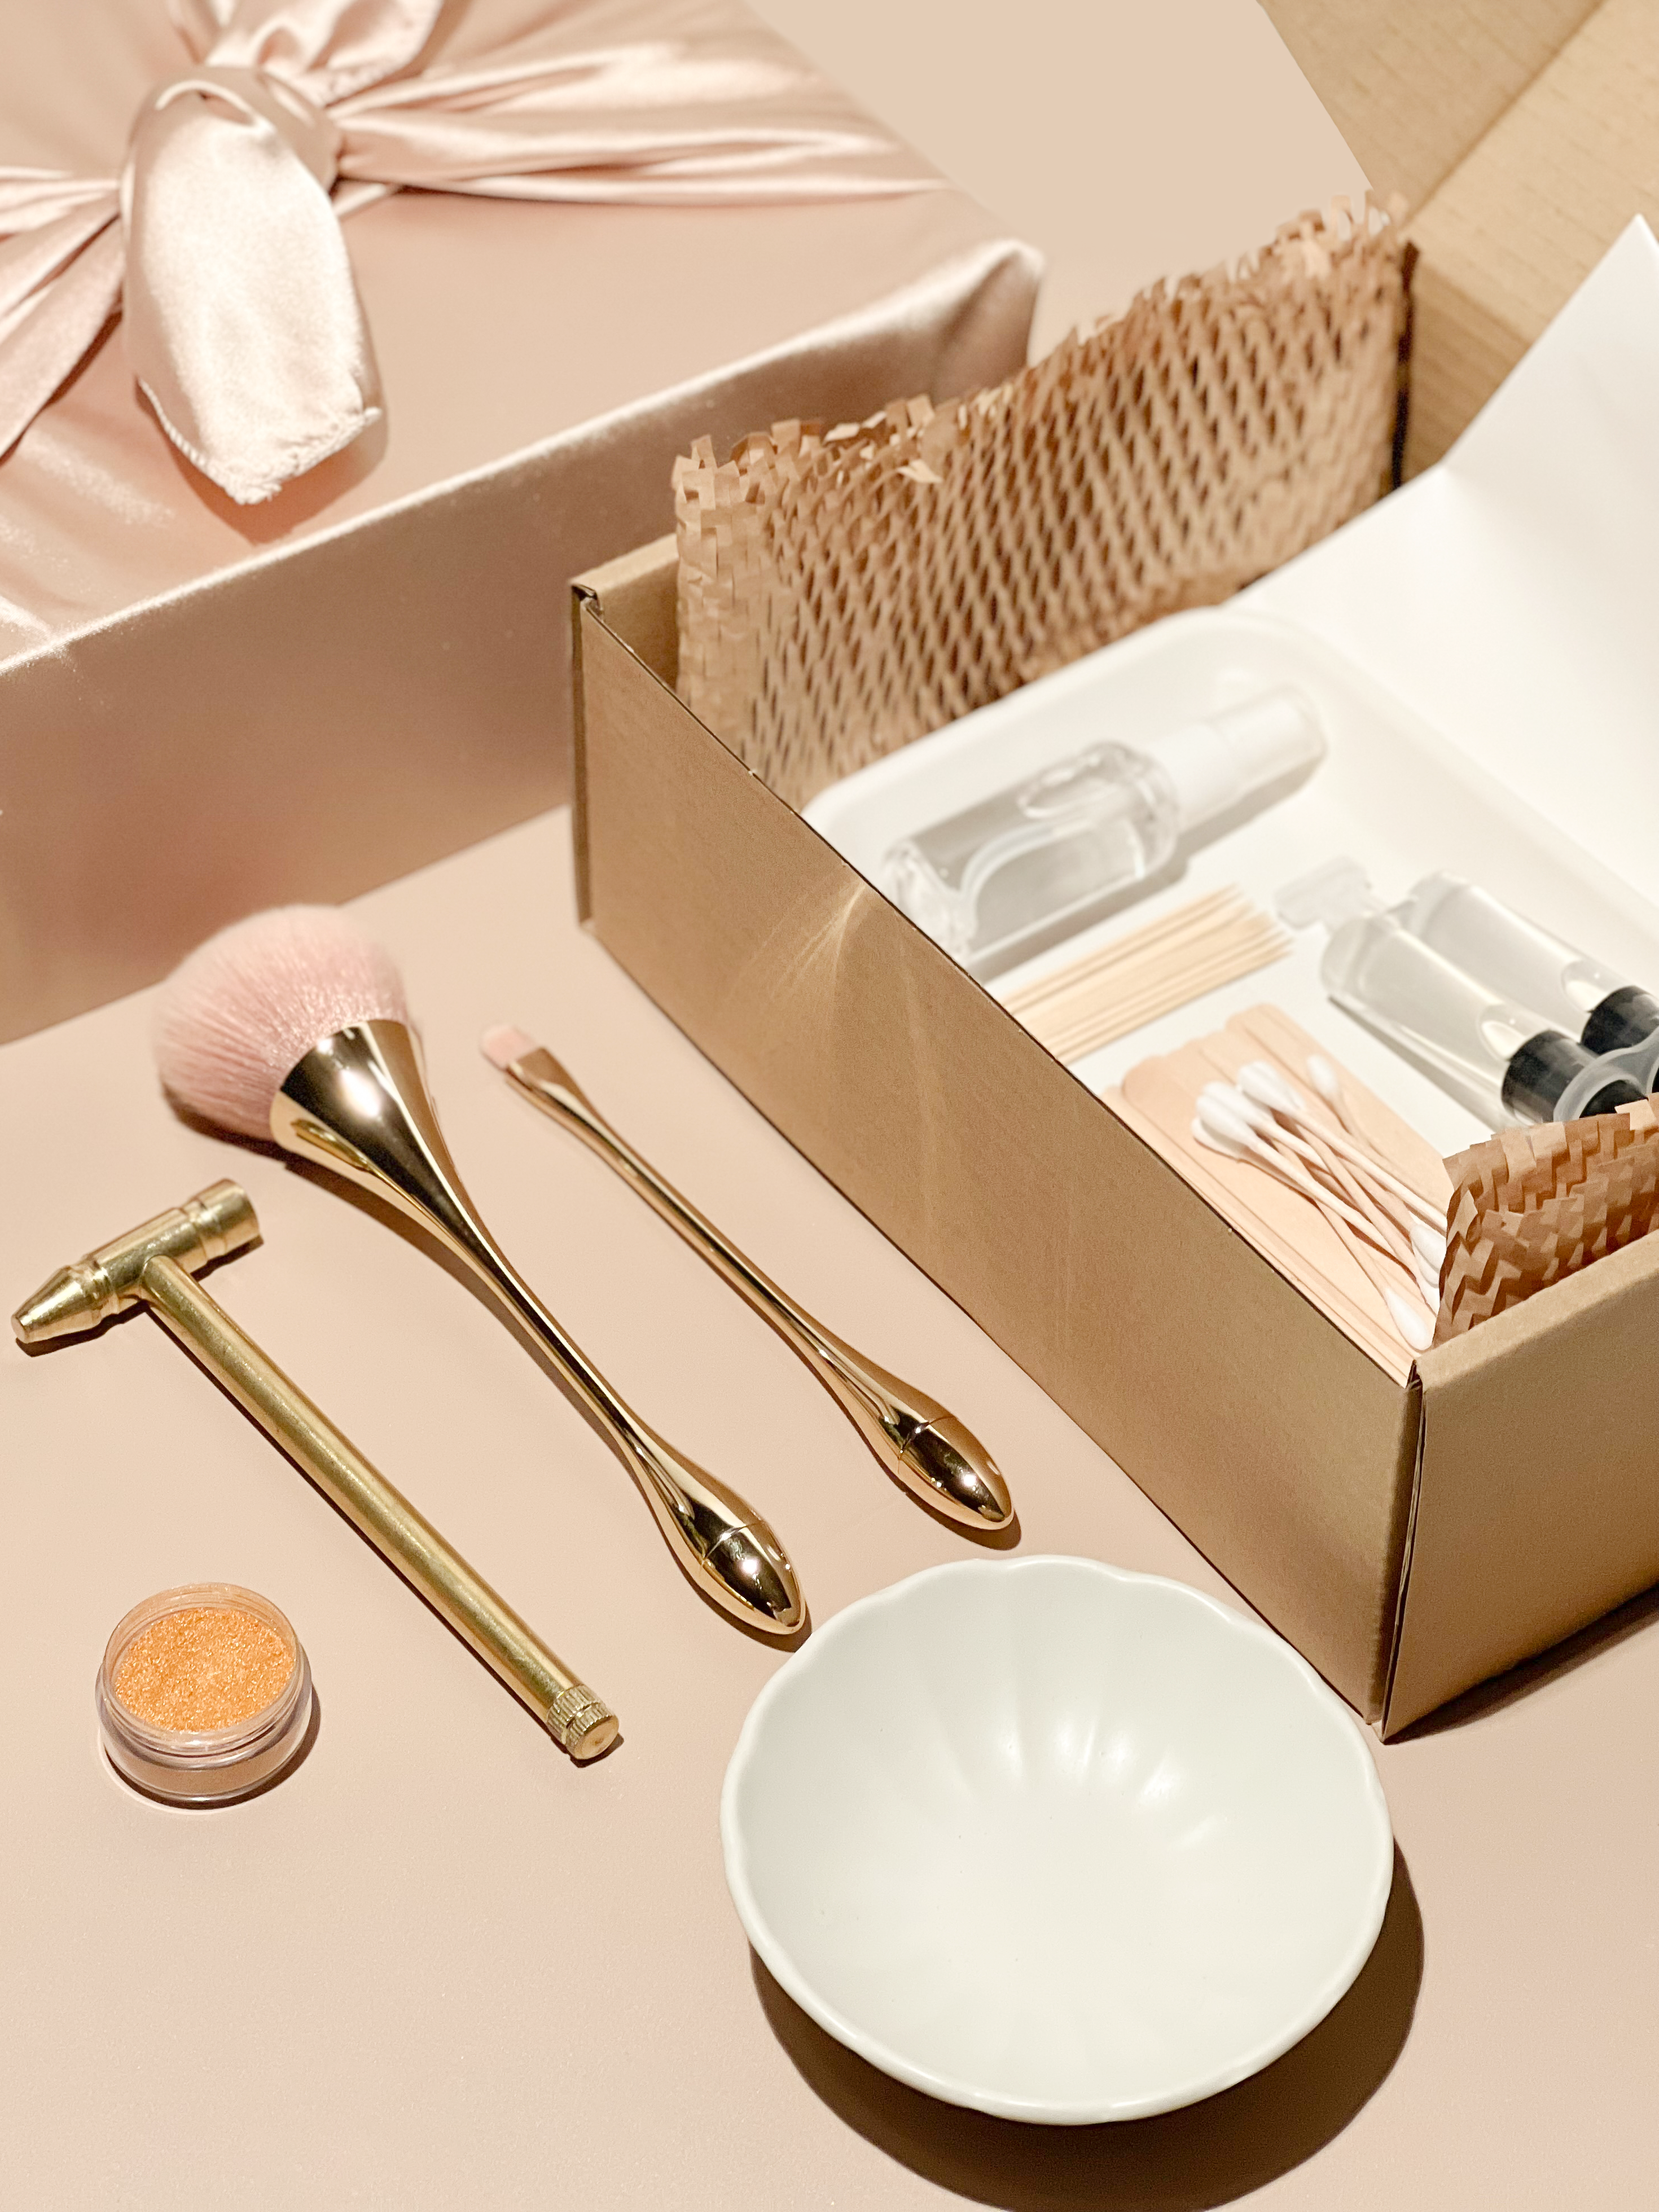 Modern Kintsugi Kit – Gold & Behold